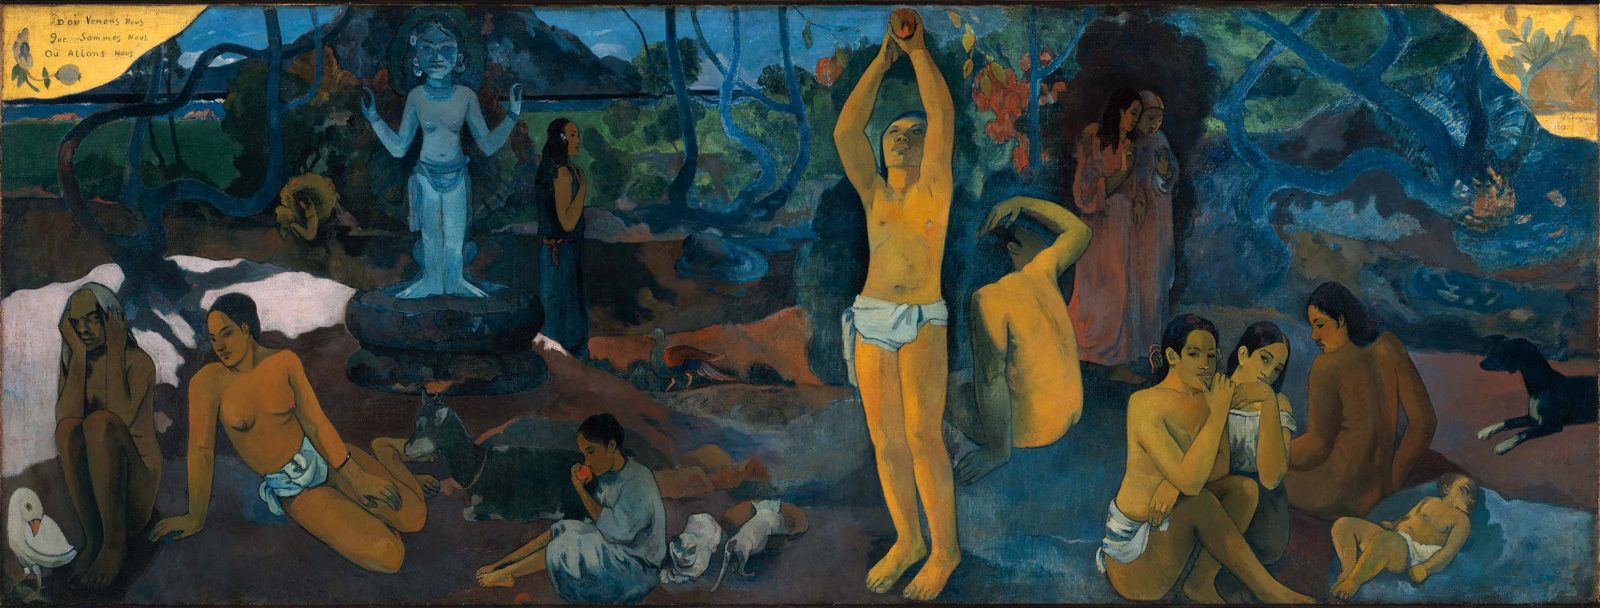 Paul_Gauguin_-_Dou_venons-nous